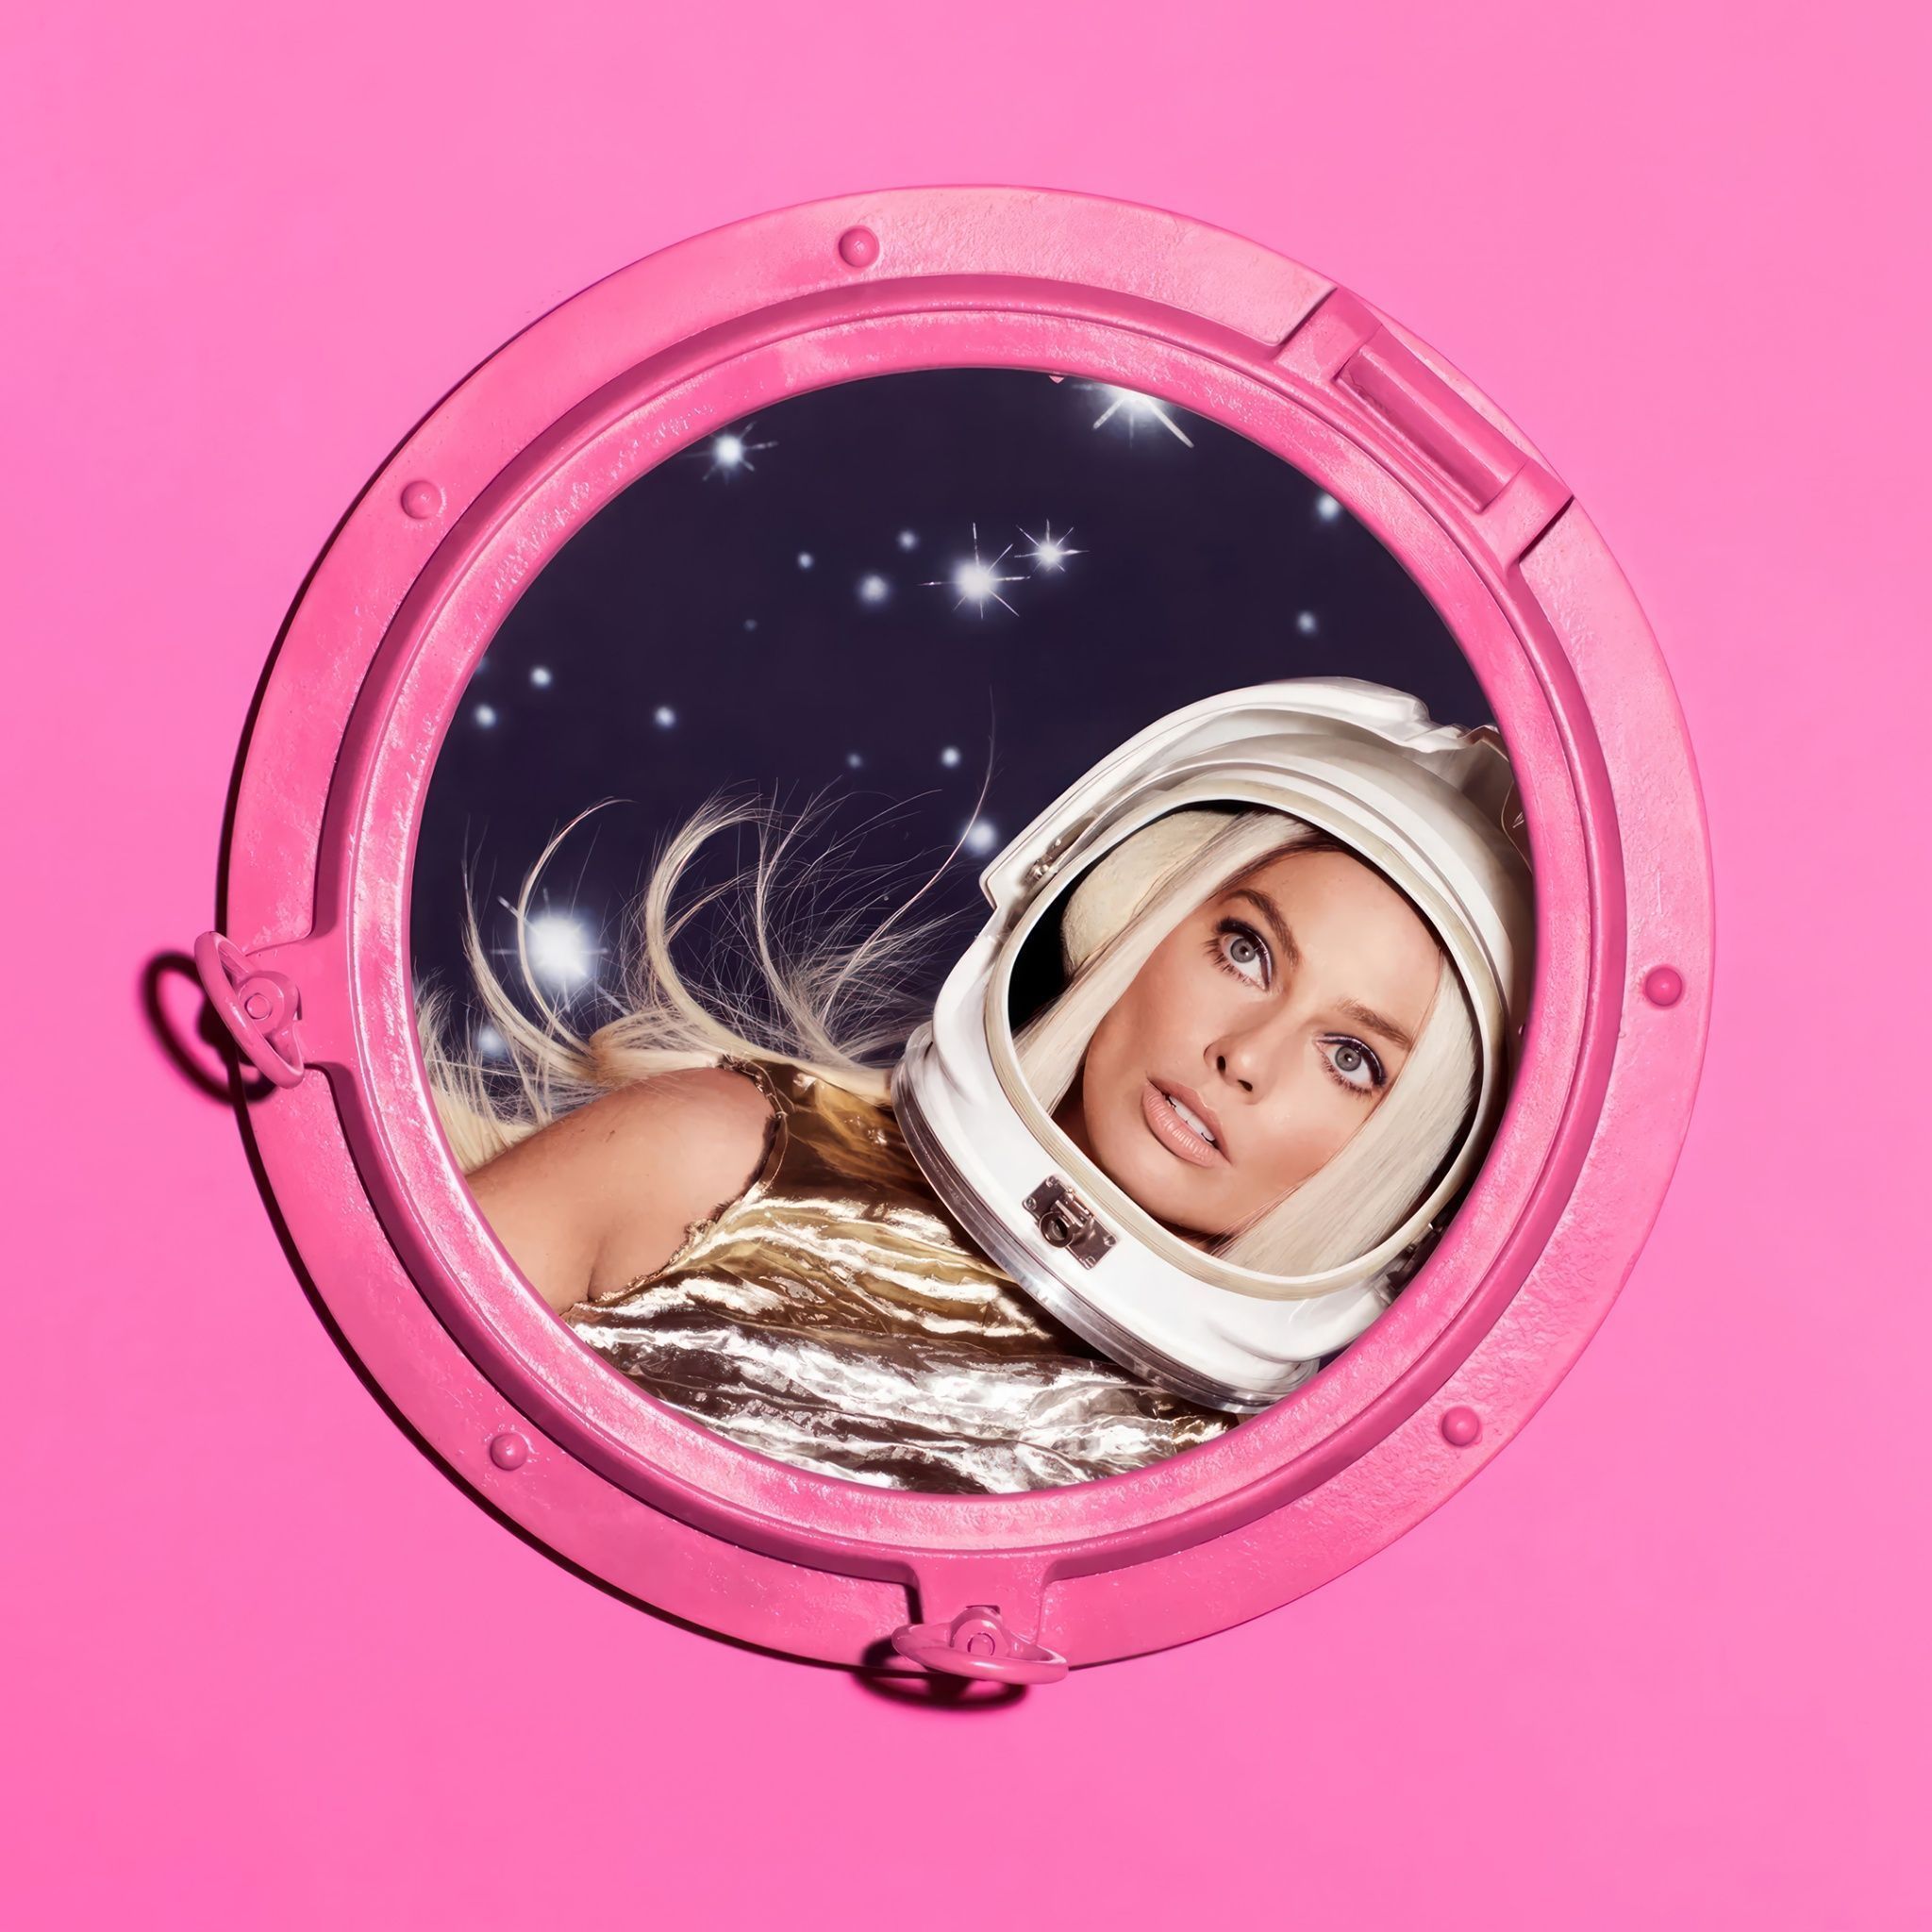 Margot Robbie as Barbie Wallpaper 4K, Pink aesthetic